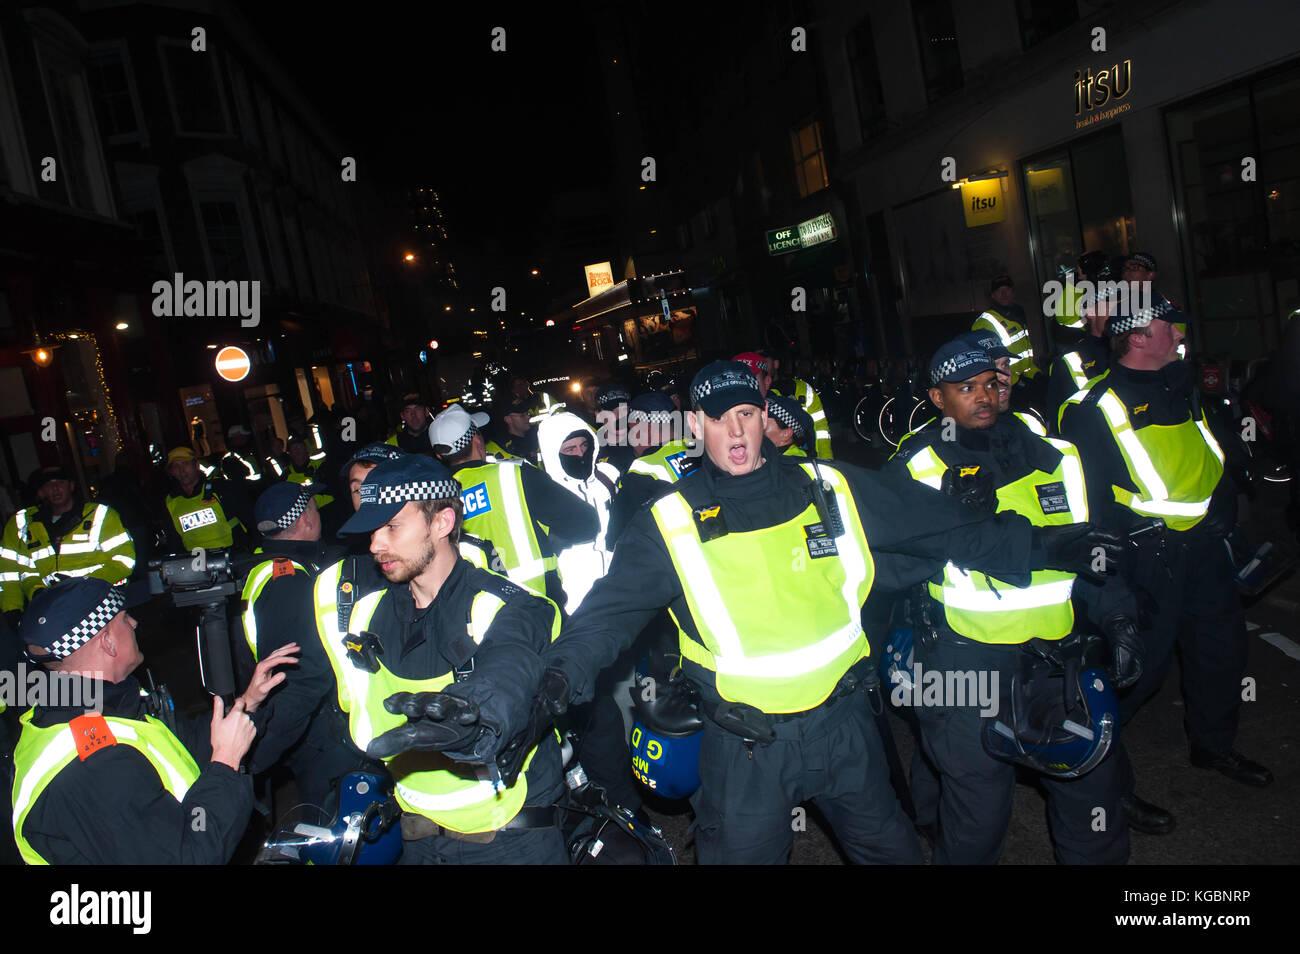 London, Vereinigtes Königreich. 5 Nov, 2017. Anonyme inspirierte Aktivisten auf die Straßen von London sind als Teil einer globalen Bewegung. versteckt sich hinter symbolischen anonyme Masken, die demonstranten Zensur protestieren, Korruption der Regierung. Credit: Michael tubi/alamy leben Nachrichten Stockfoto